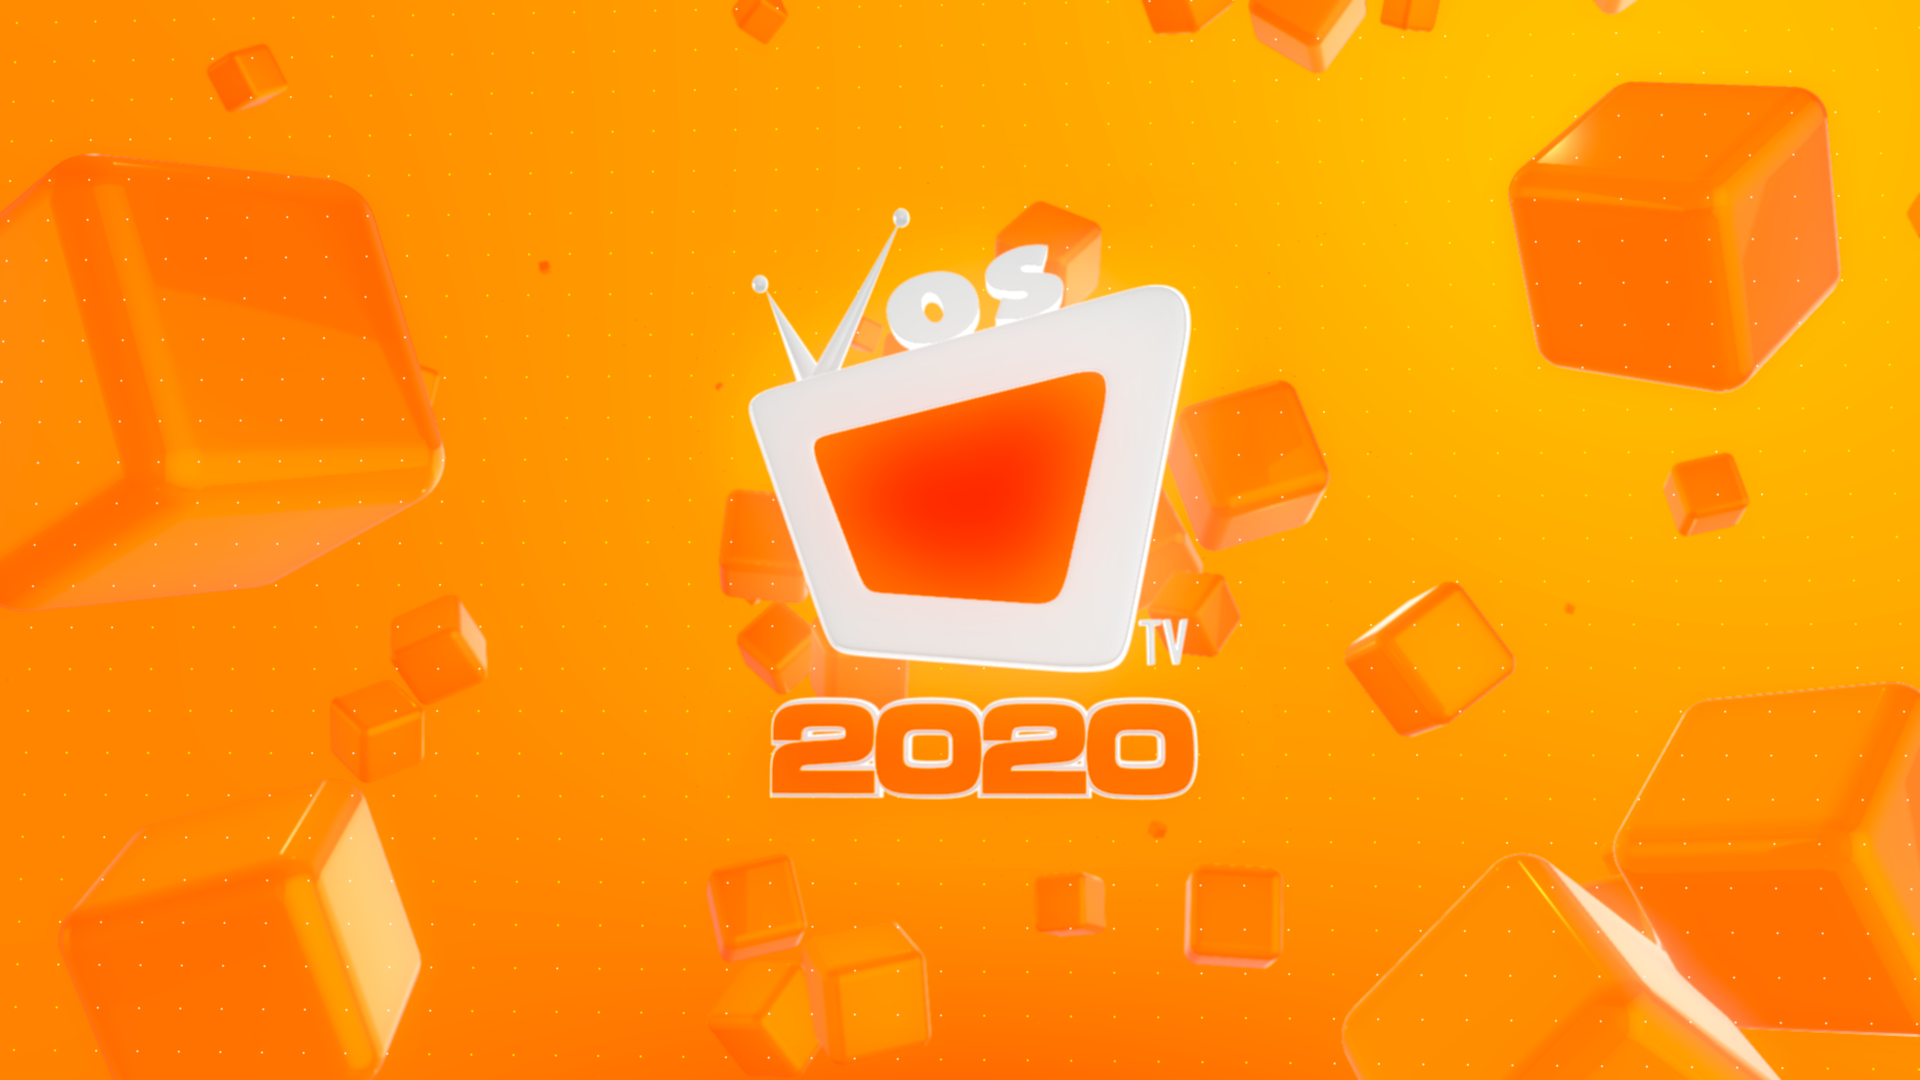 Vos Tv presenta programación para 2020